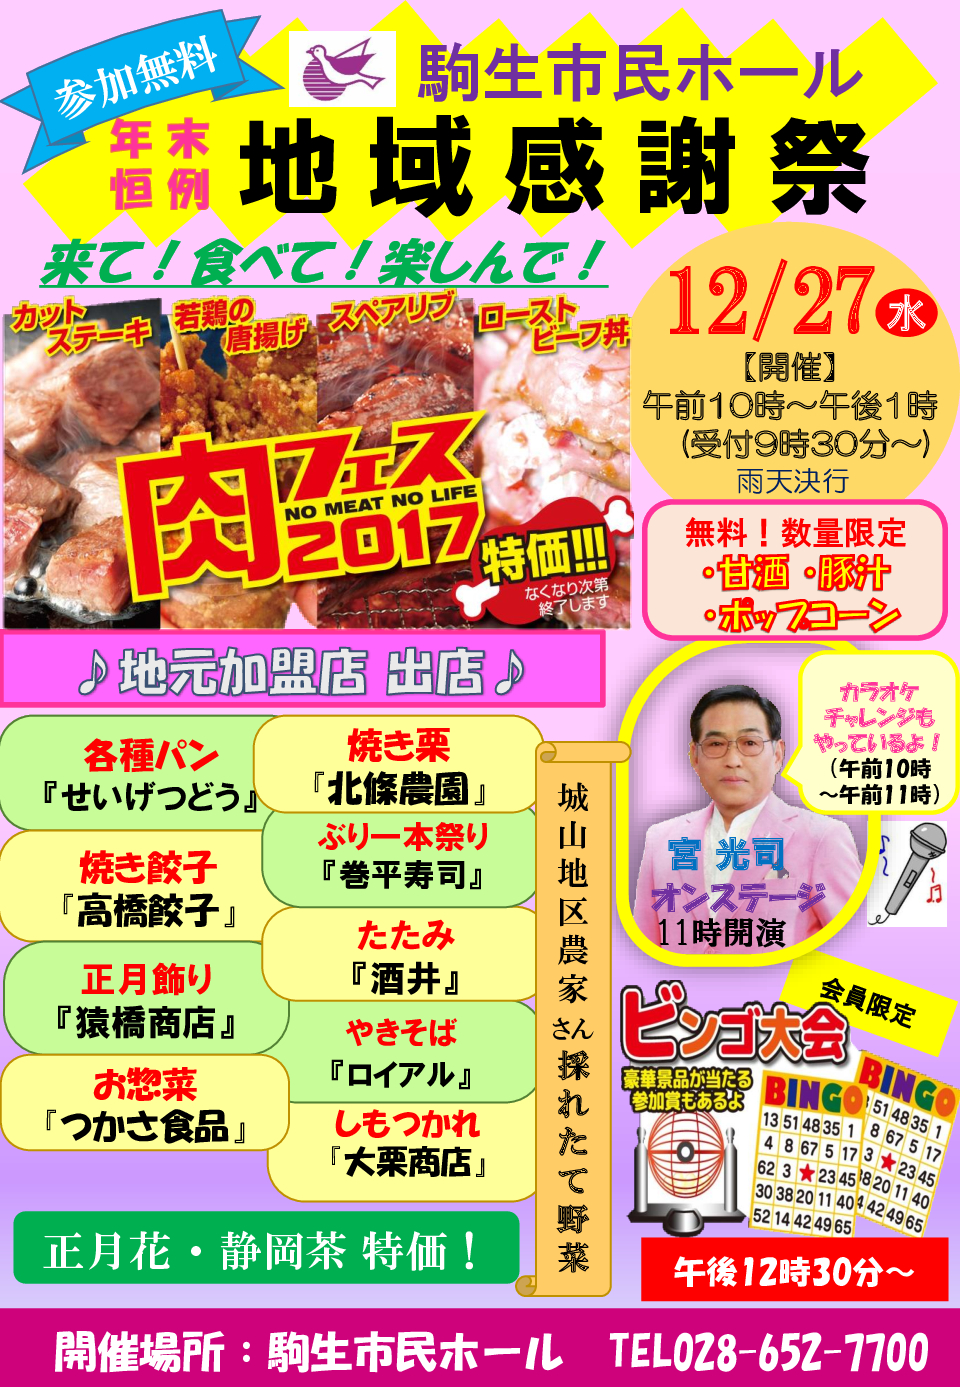 駒生市民ホール「年末地域感謝祭」12/27開催